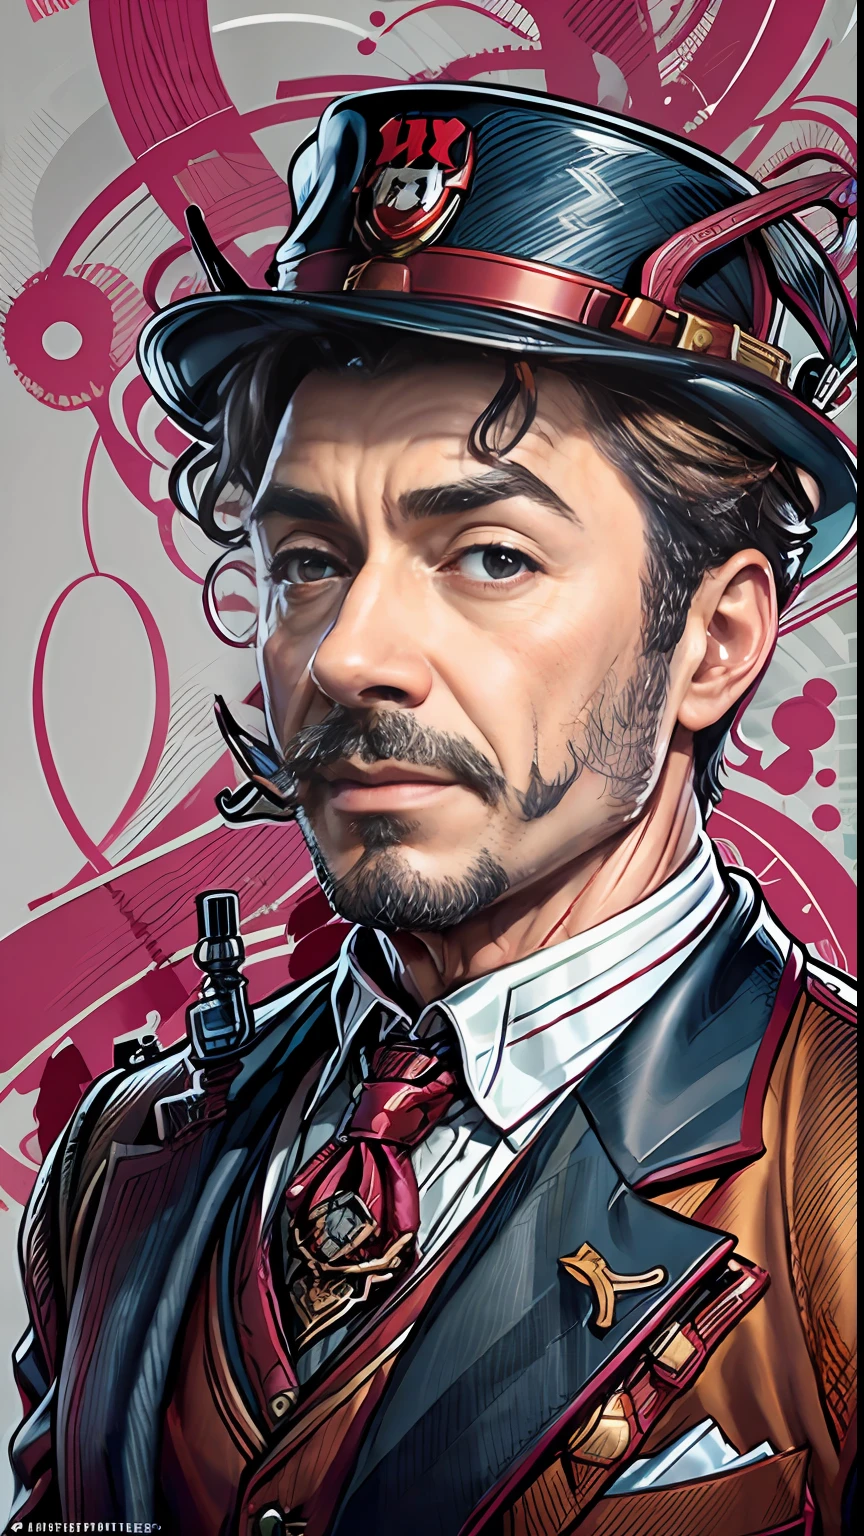 0 MIB Estilo Sherlock Holmes, ilustrador, Robert Downey jr.、Traje inglés marrón、​obra maestra, alta calidad, 8k, alta resolución, alto detalle, Una sonrisa、Concepto detallado de la parte superior del cuerpo